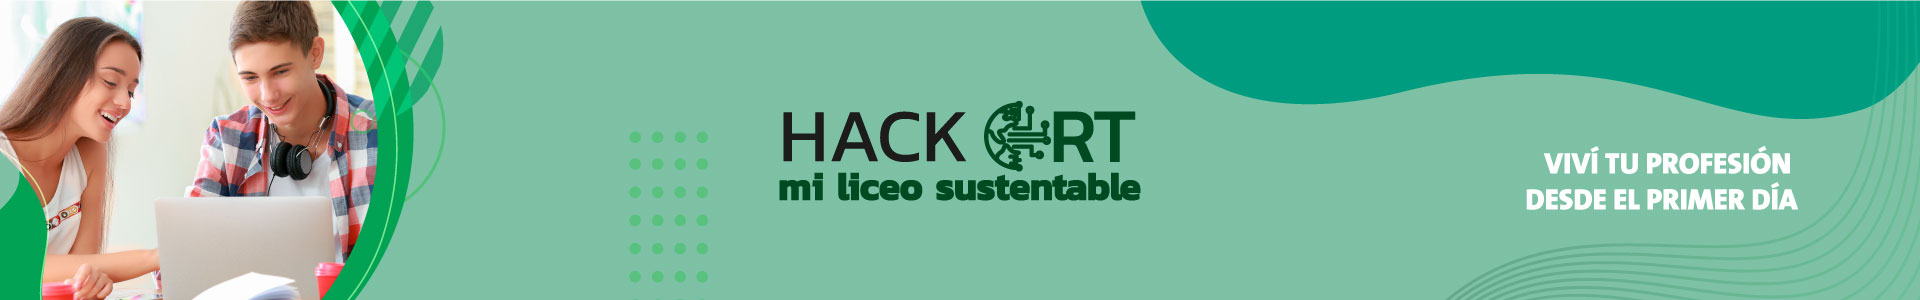 Hack ORT: mi liceo sustentable